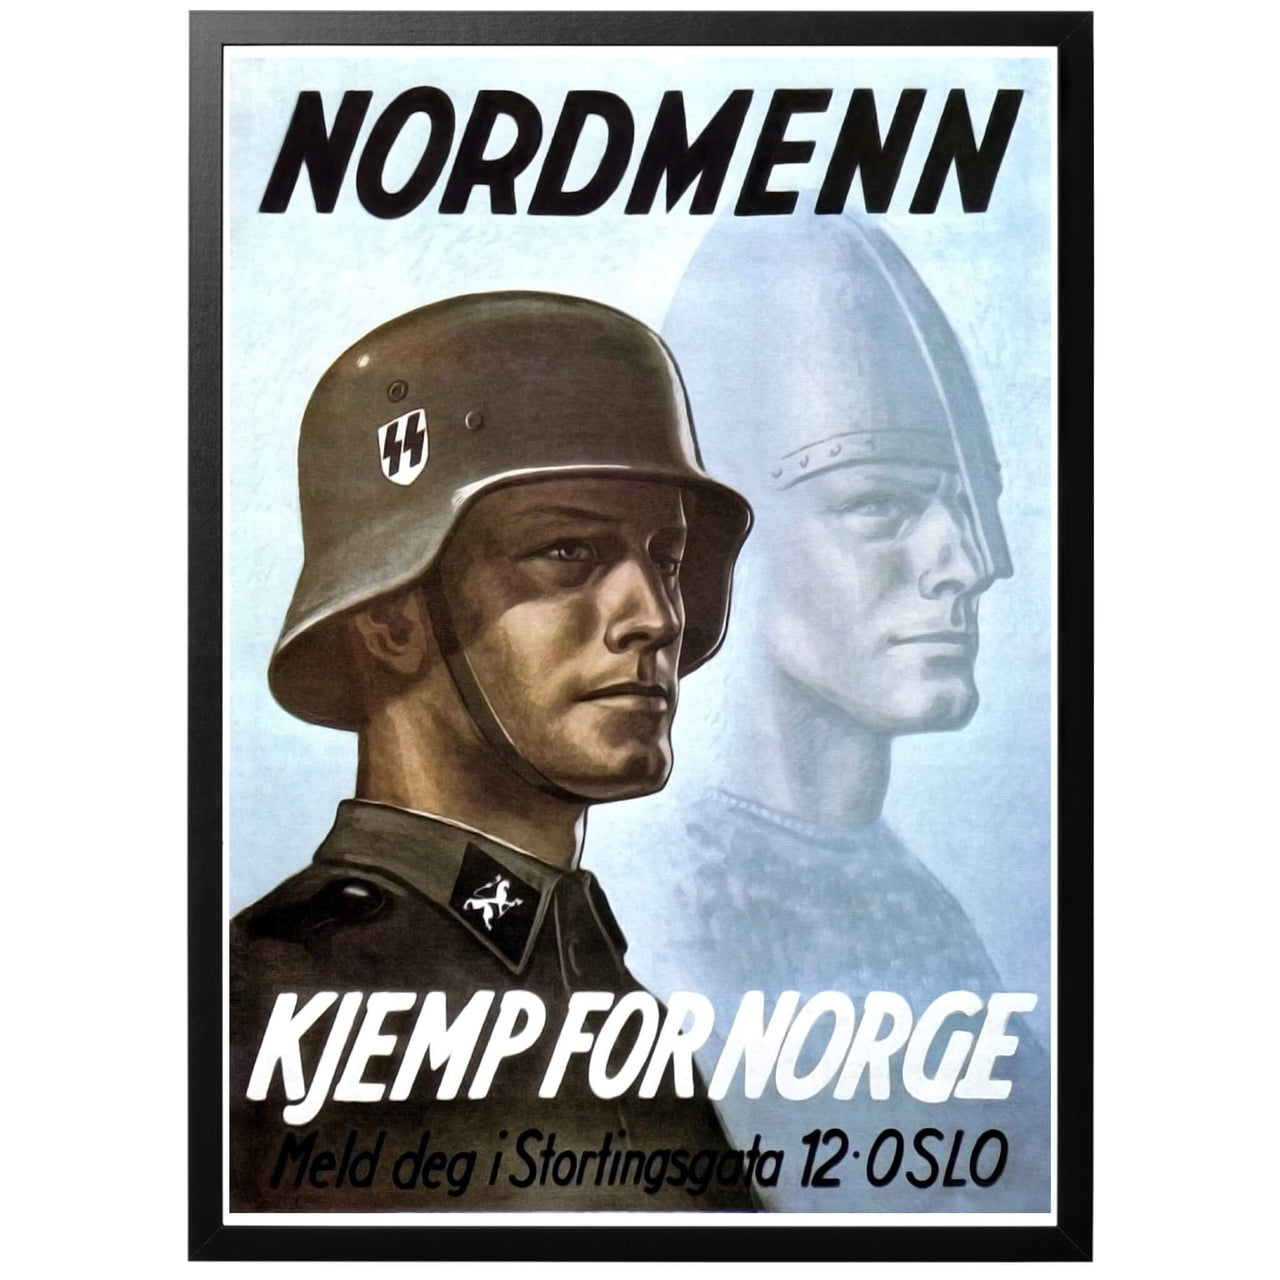 Nordmenn Kjemp for Norge Poster